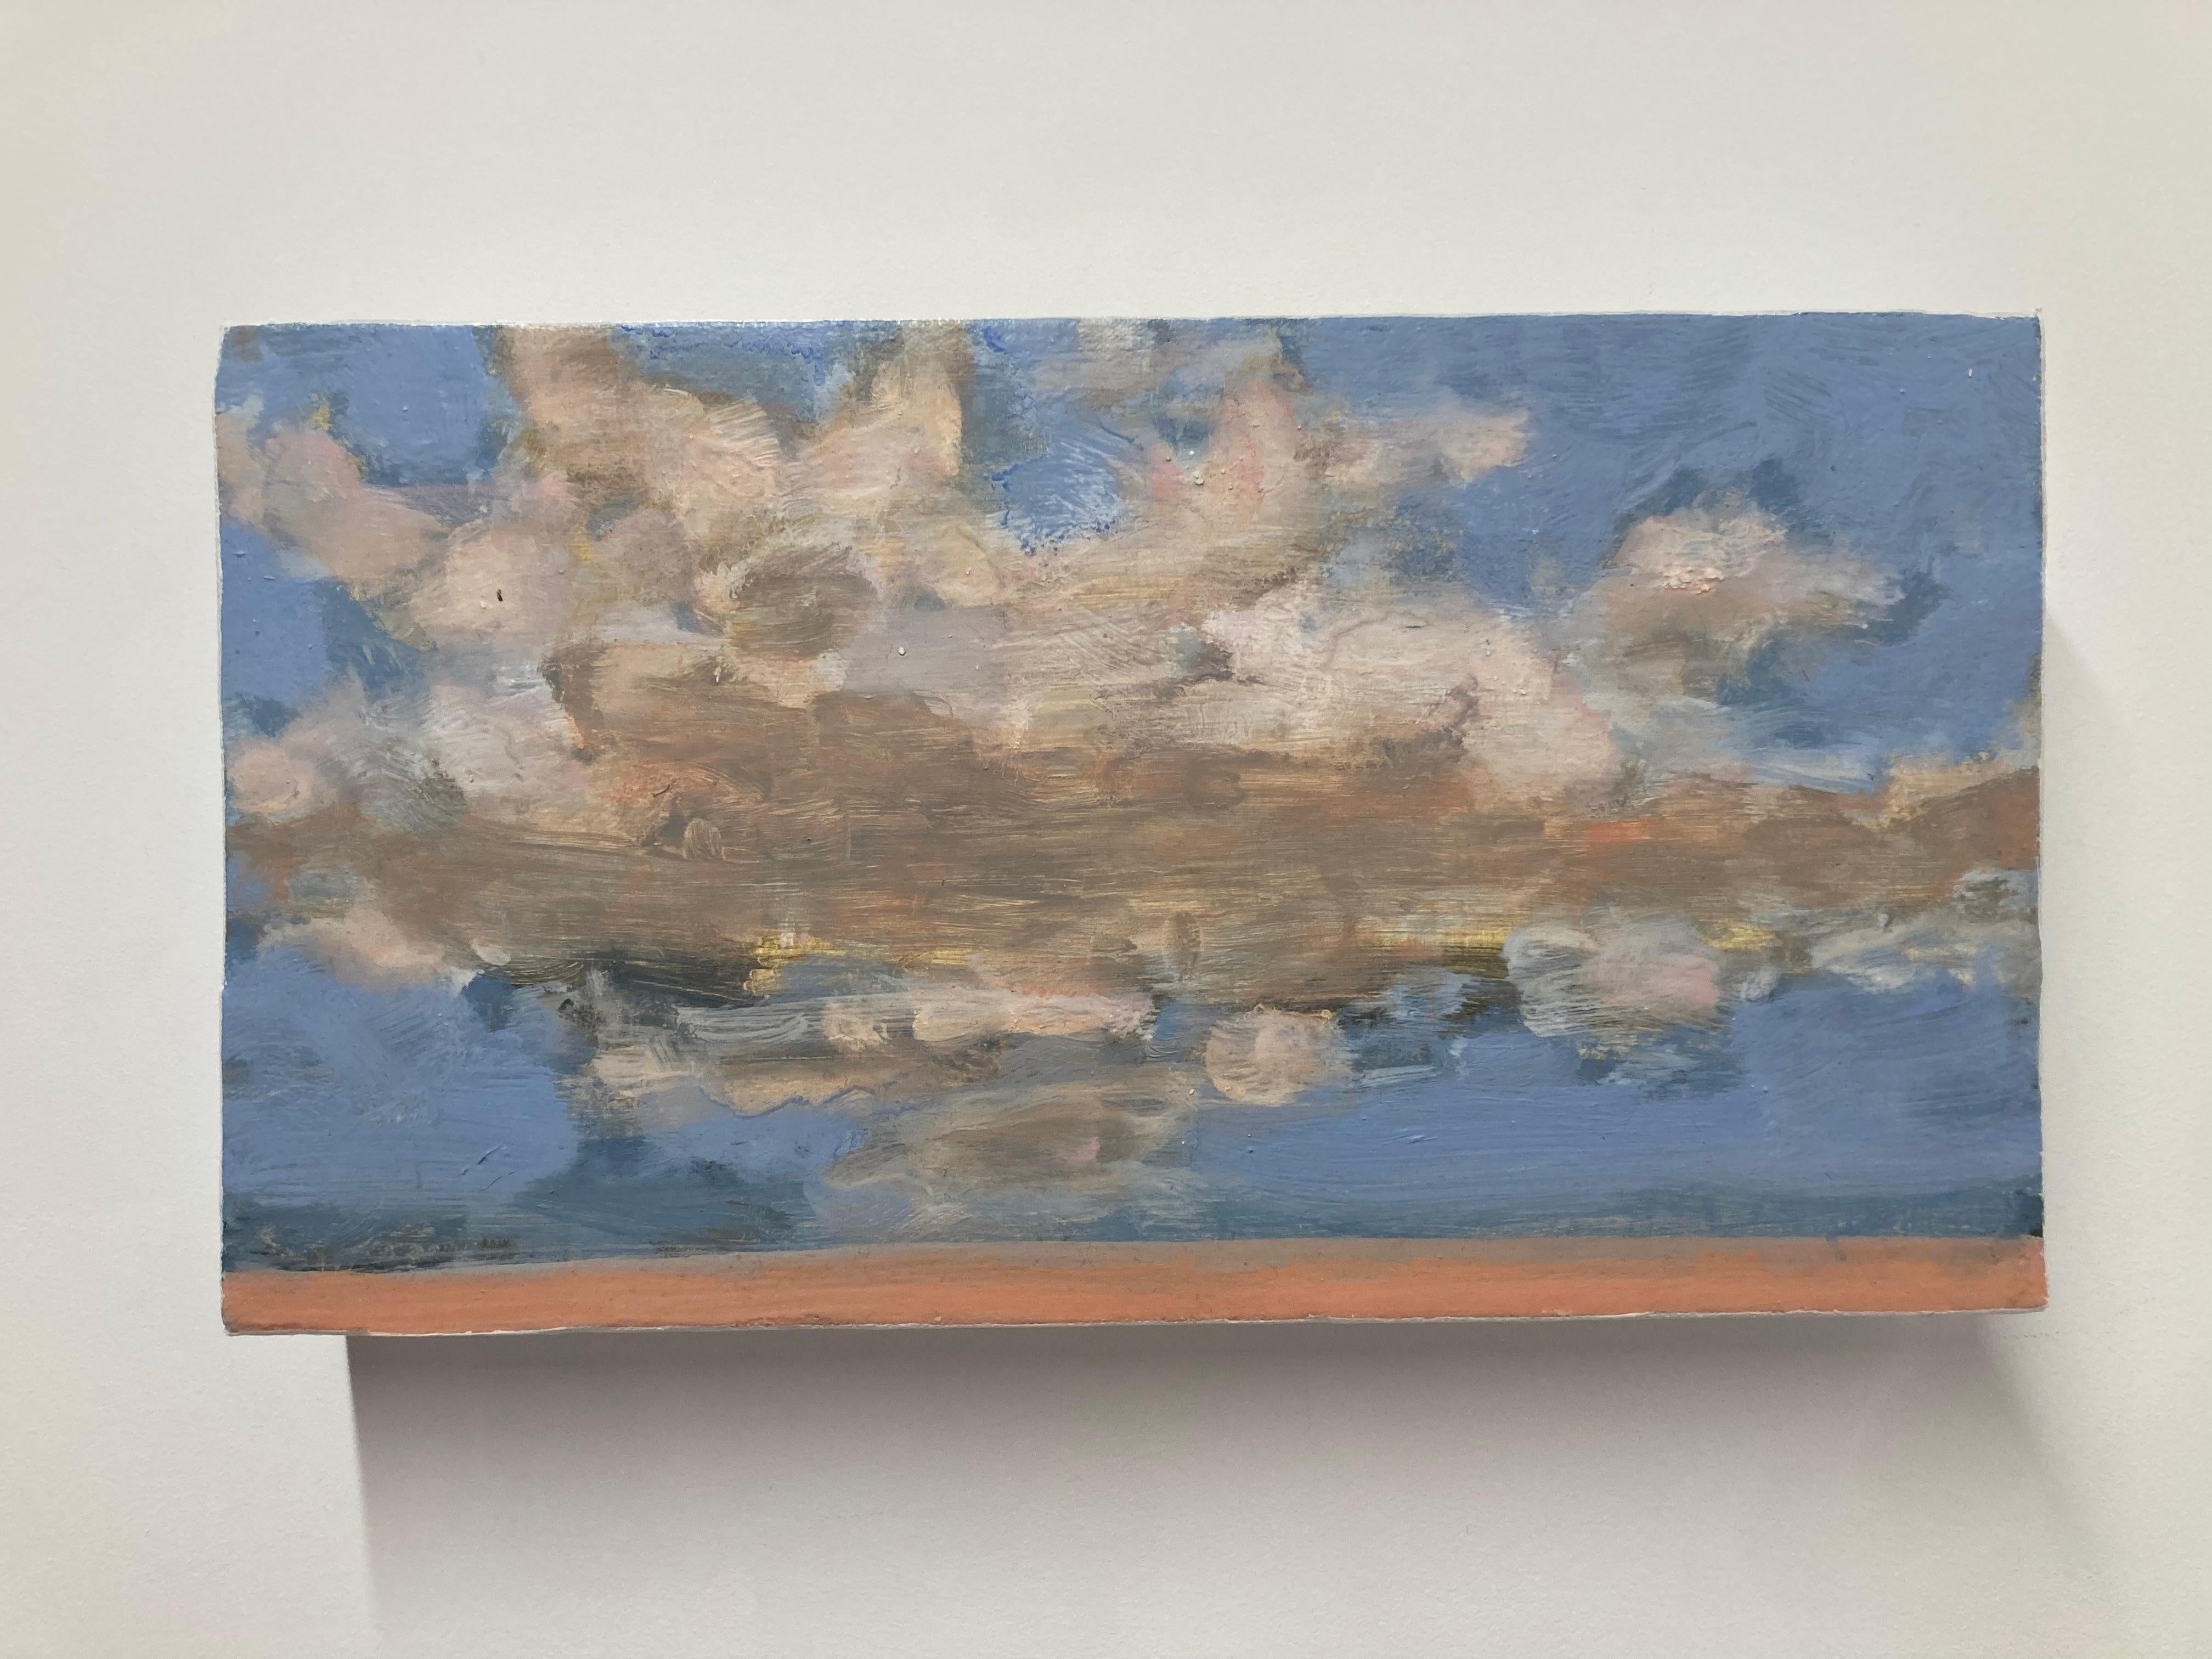 Flauschige, elfenbeinfarbene Wolken mit warmen, pfirsichfarbenen Schimmern und einem Hauch von Hellgelb schweben in einem idyllischen blauen Himmel über einem Sandstrand. Verso signiert, datiert und betitelt.

David Konigsberg trägt viele Schichten